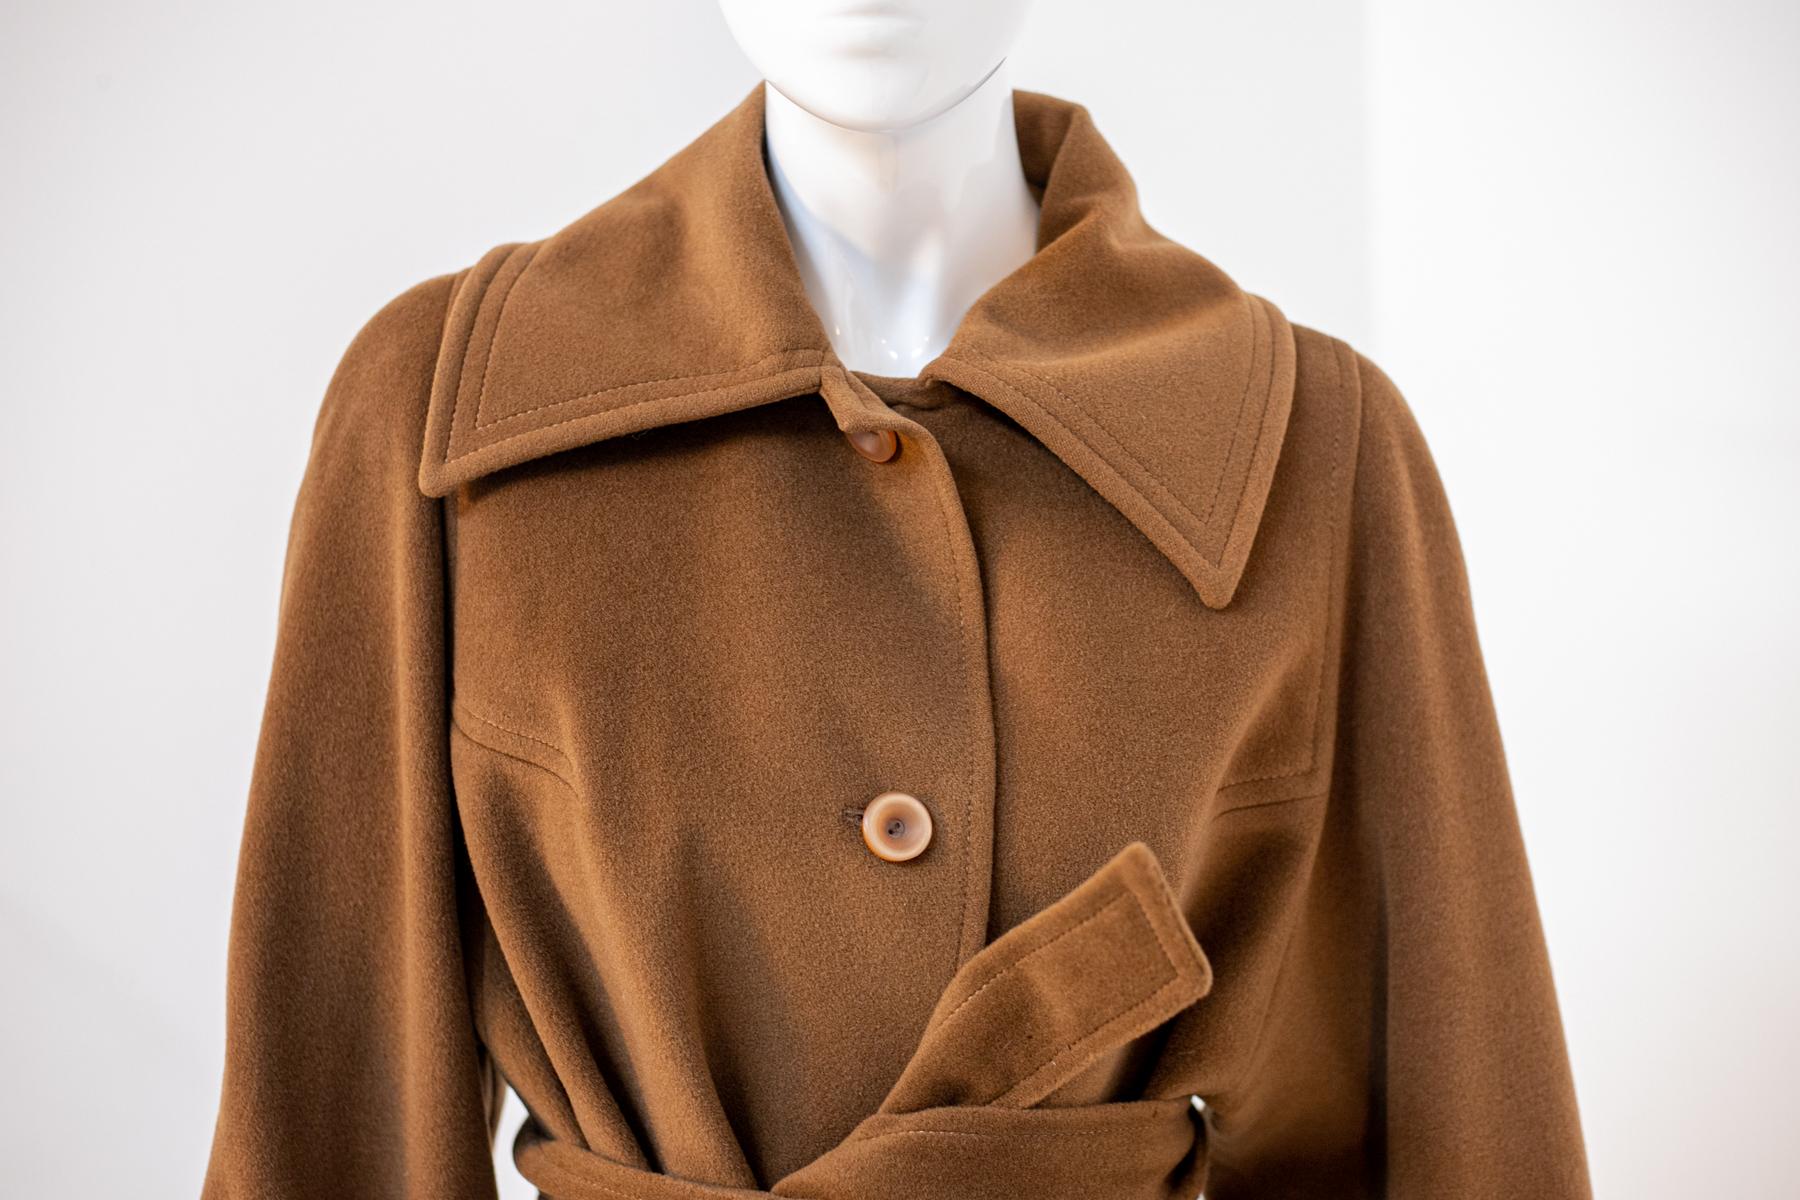 Eleganter Wollmantel, entworfen in den 1980er Jahren, hergestellt in Italien.
Der Mantel ist ganz aus warmer hellbrauner Wolle, Farbe camel. Es reicht bis zu den Knien und hat lange Ärmel. Die Ärmel sind groß genug, um dicke Pullover zu tragen, aber